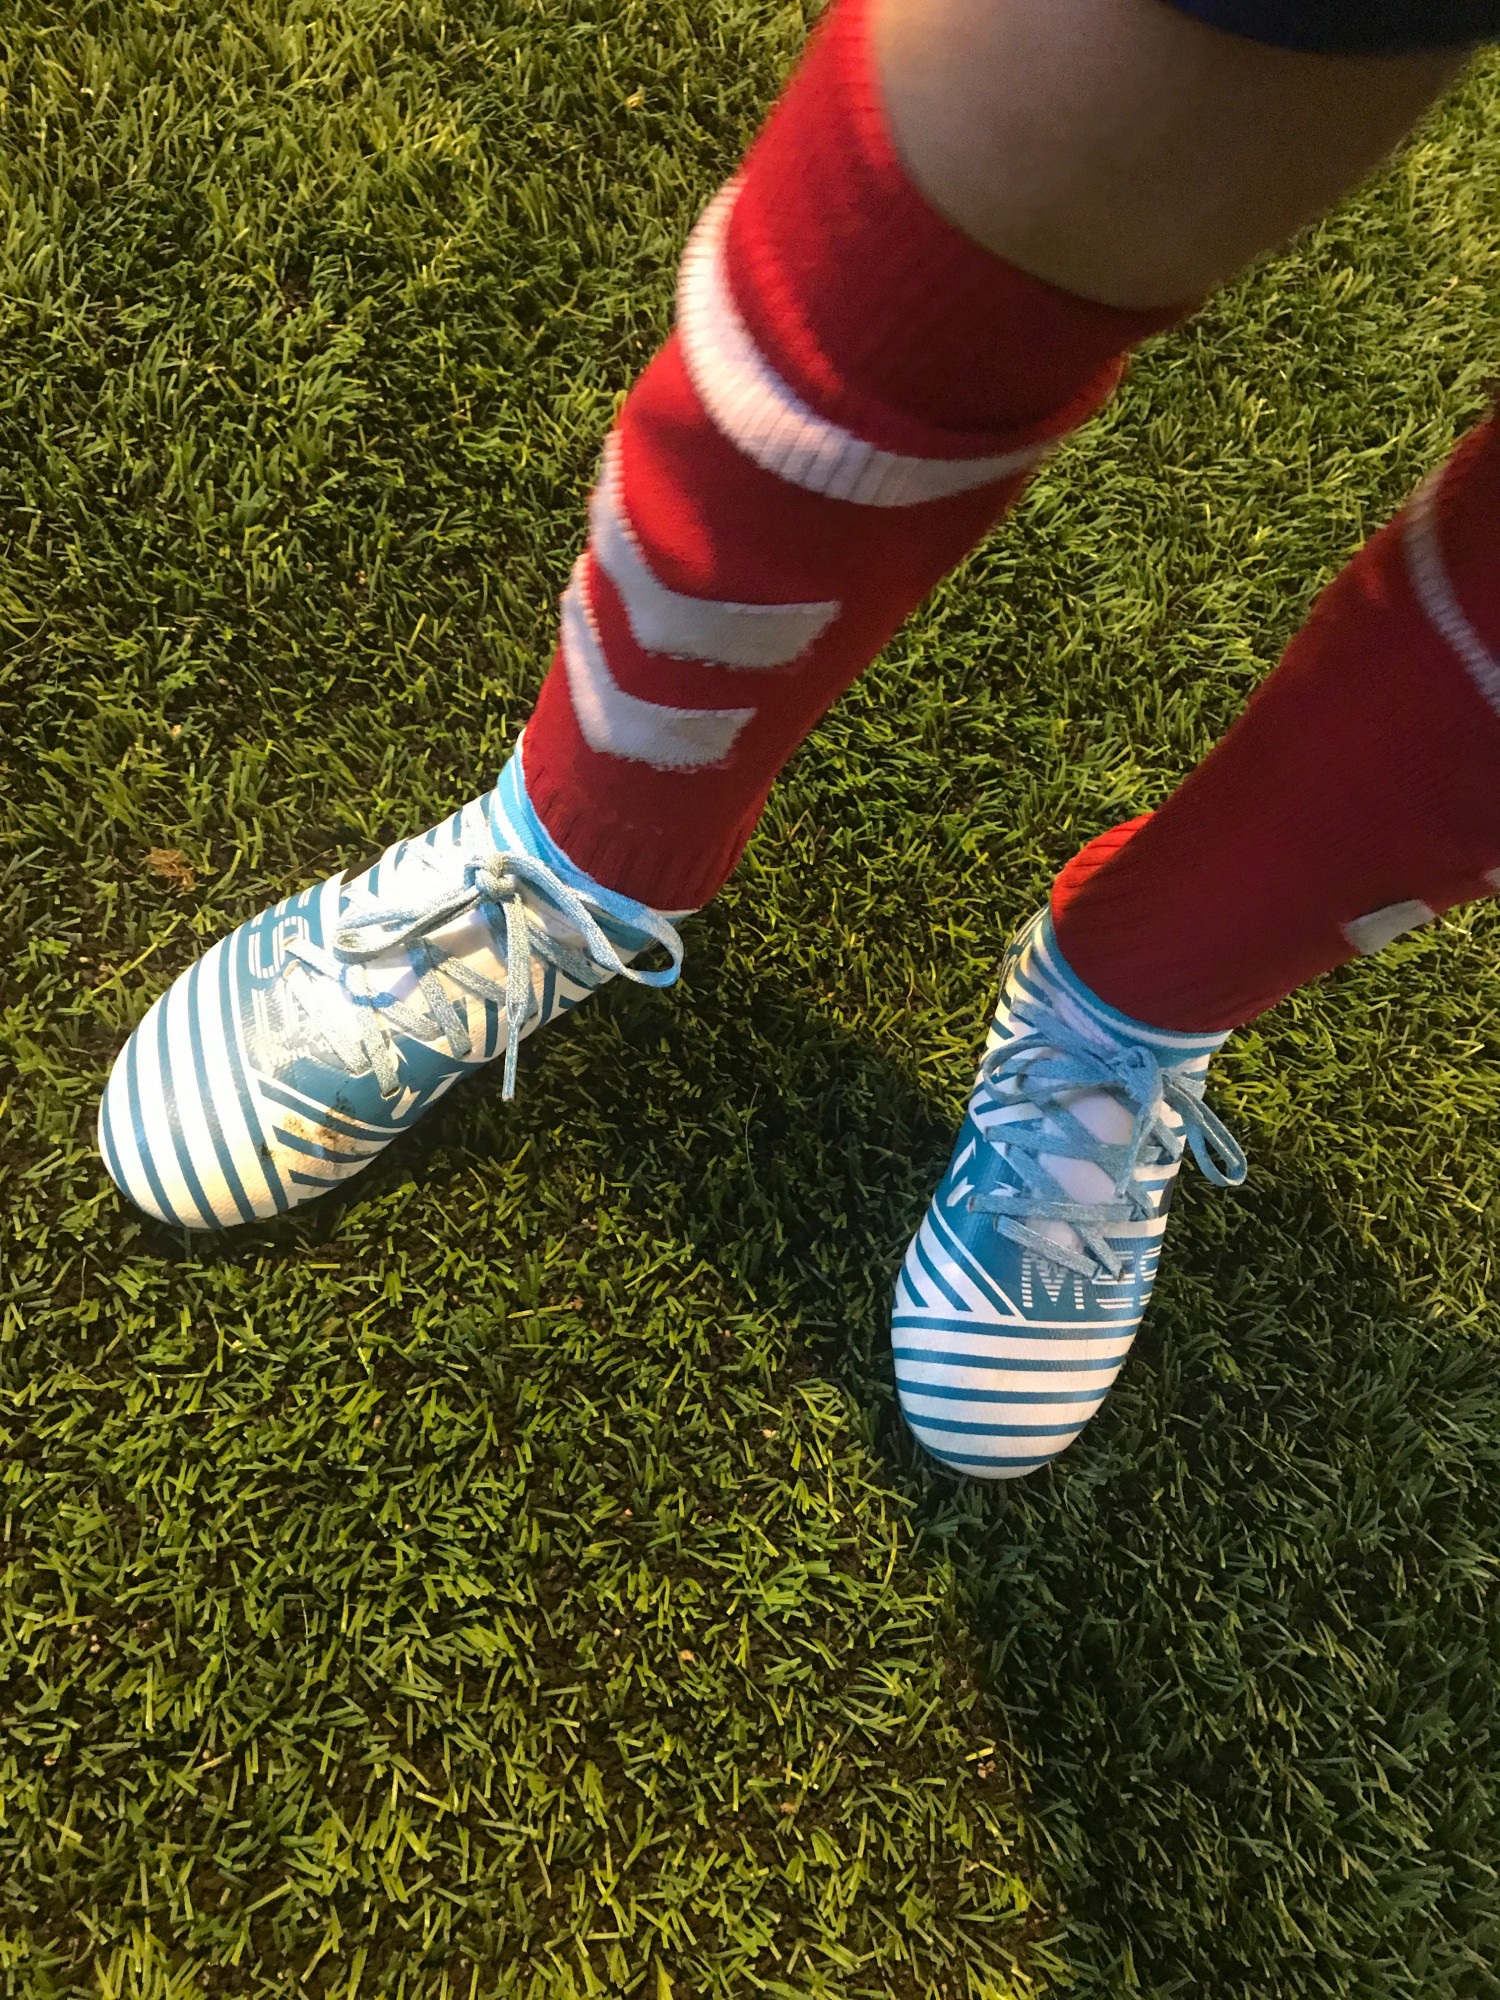 Test af fodboldstøvler fra Unisport.dk | Børn | Testfamilien